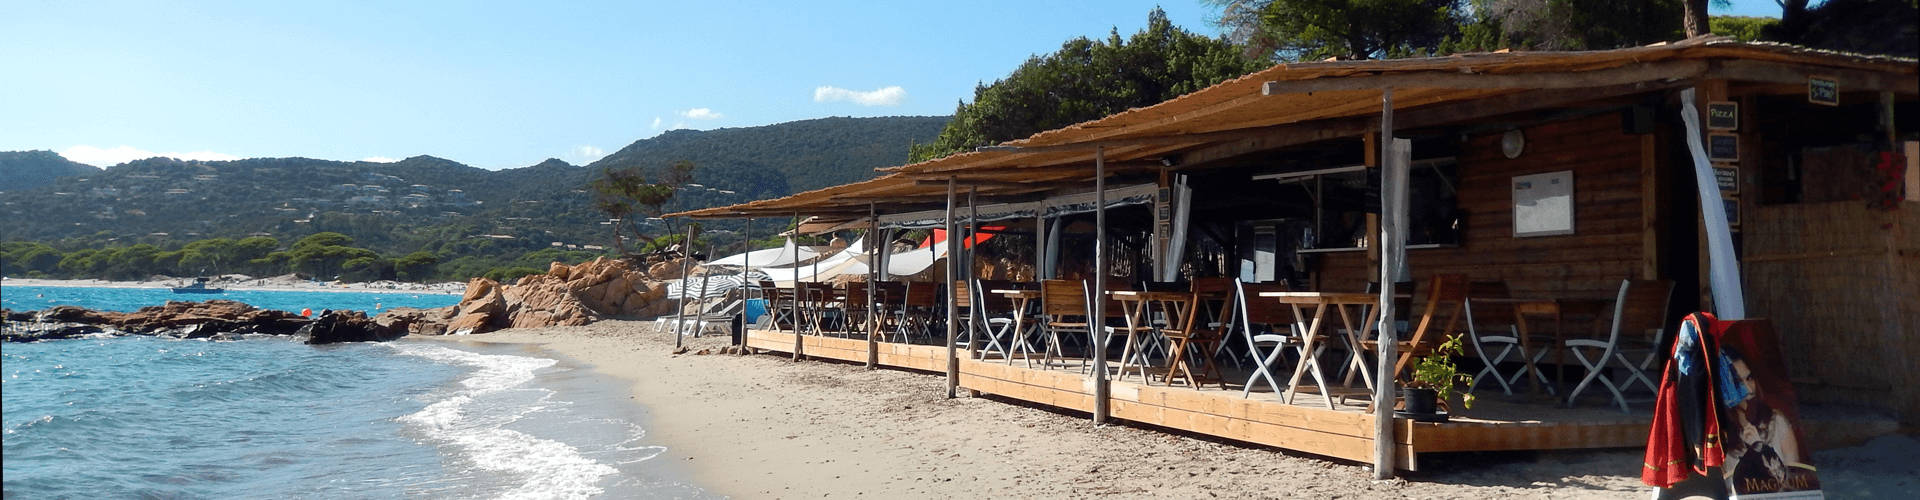 Eten en drinken op Corsica: restaurant op het strand